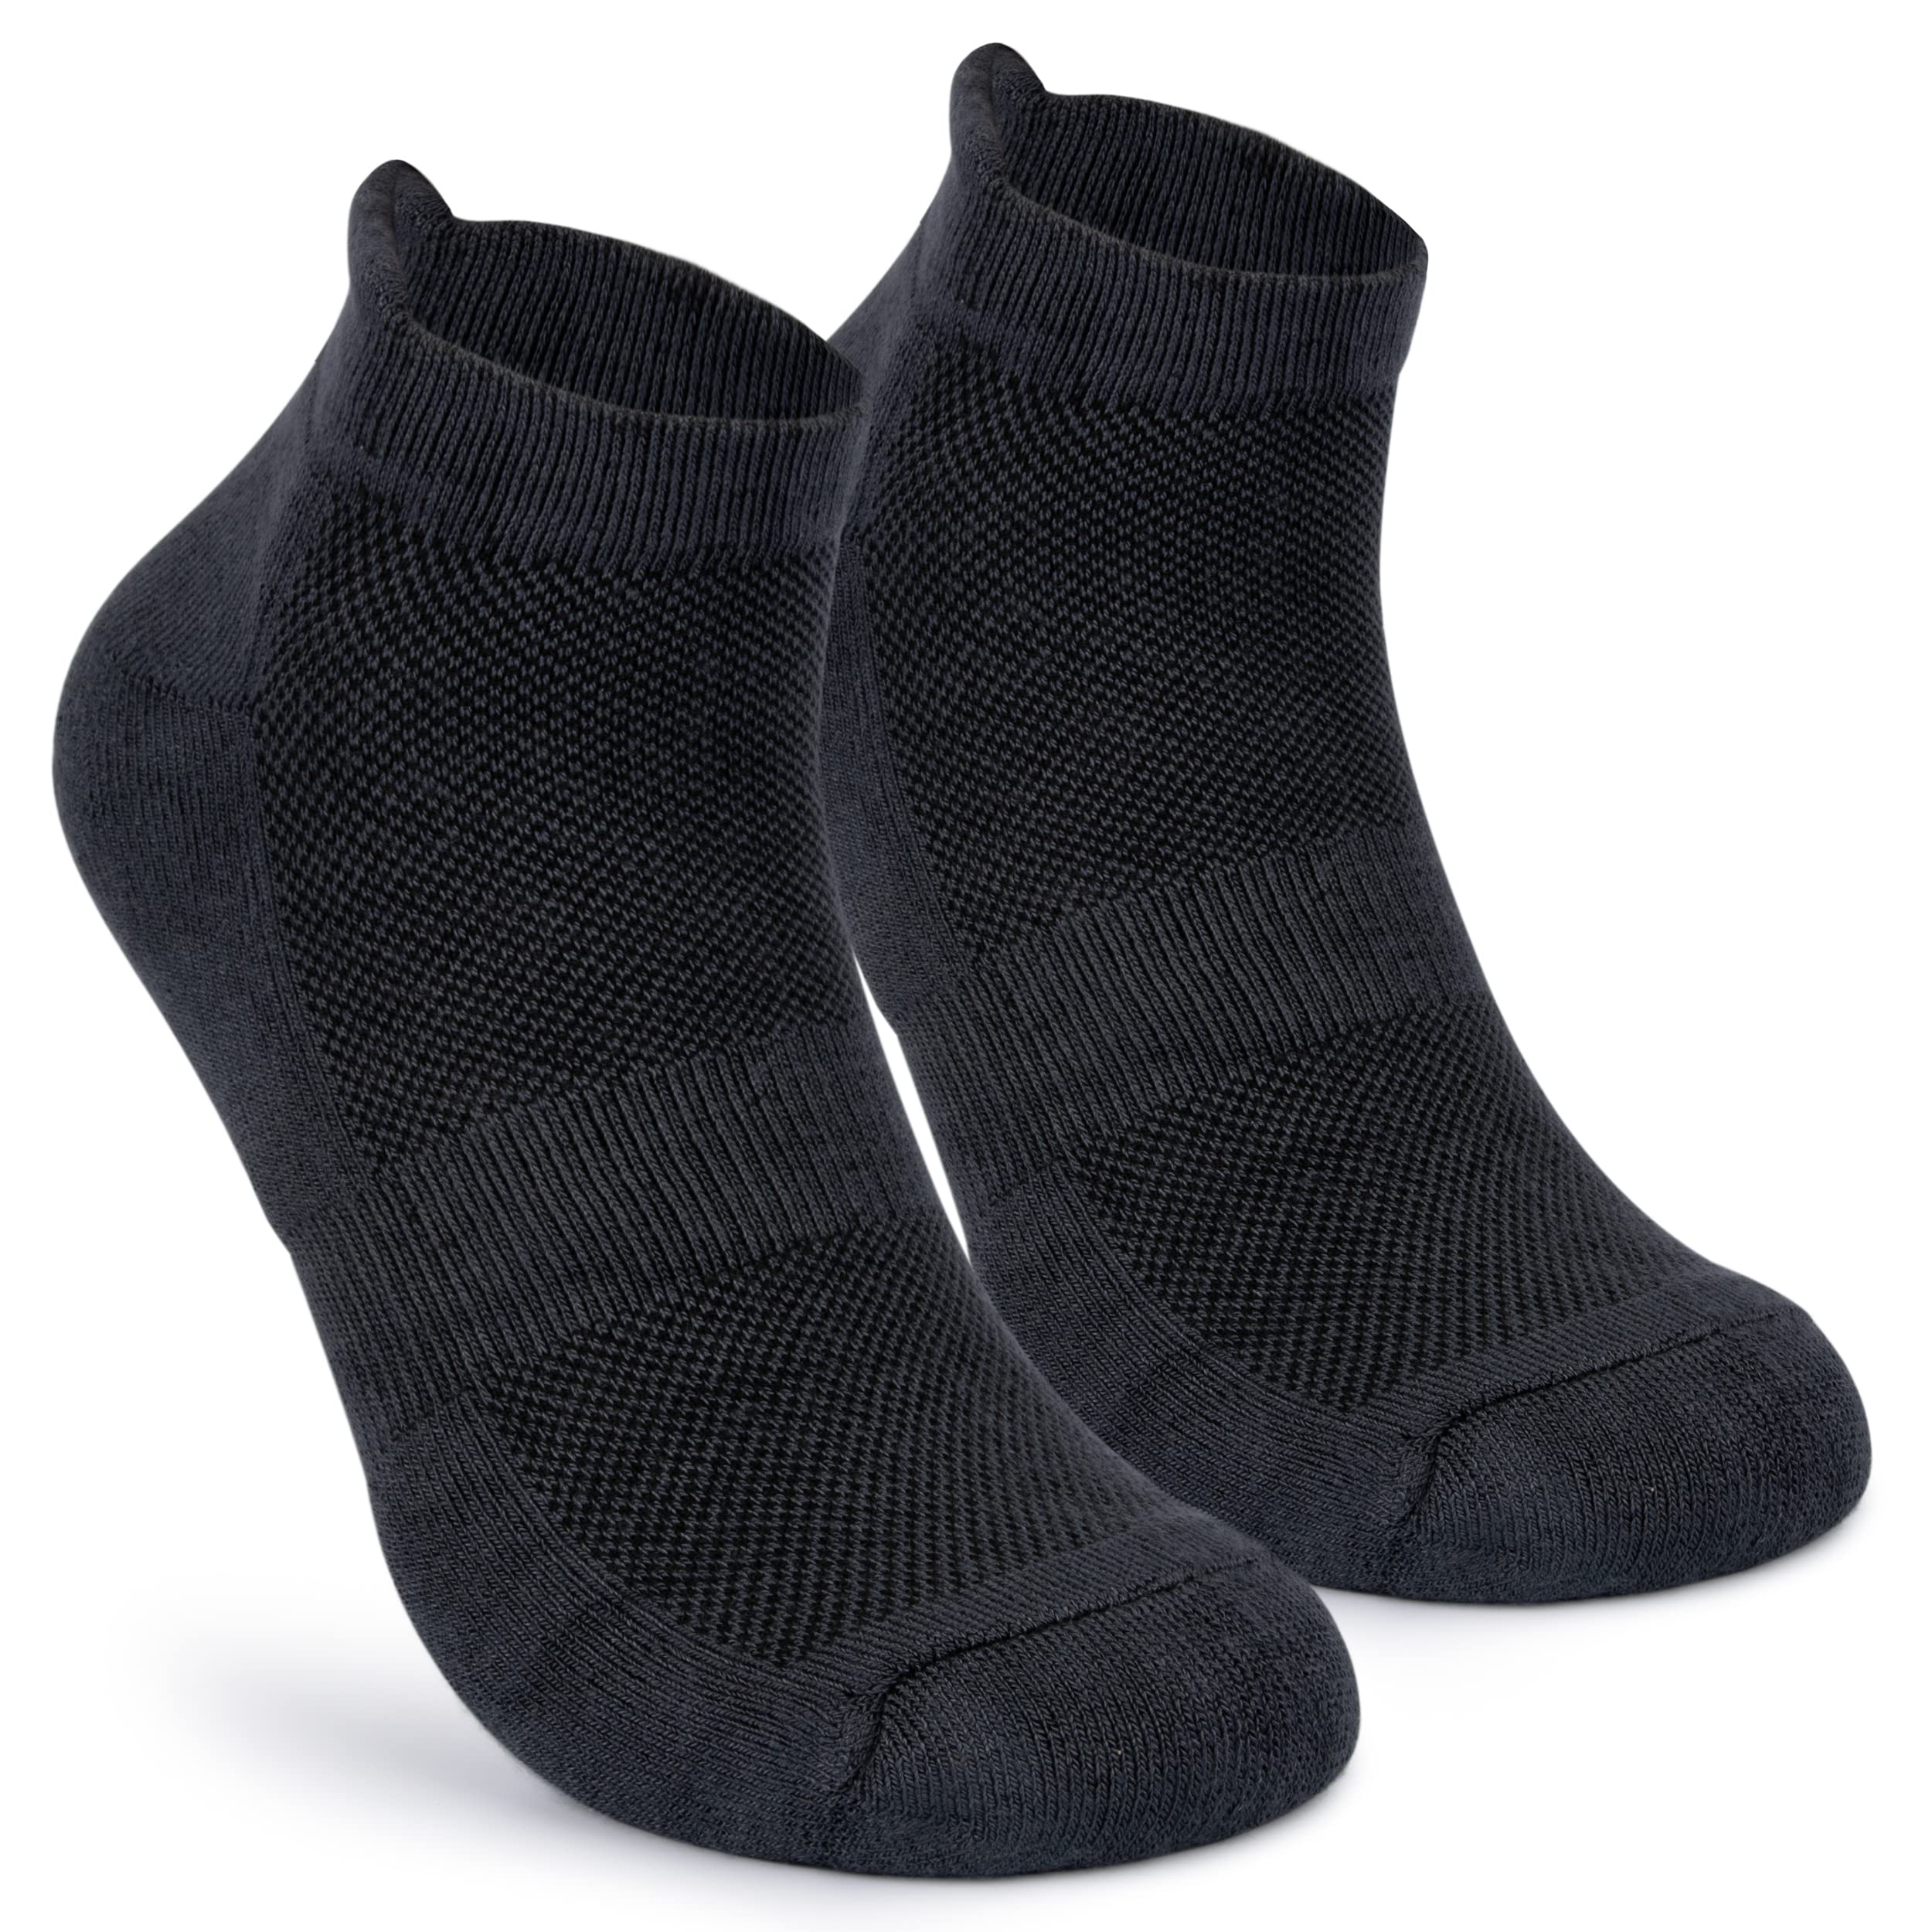 Mush Bamboo Ultra Soft, Anti Odor, Breathable, Anti Blister Ankle Socks for Men & Women for Running, Sports & Gym (Pack of 3) (Dark Grey,Black,Sea Green)